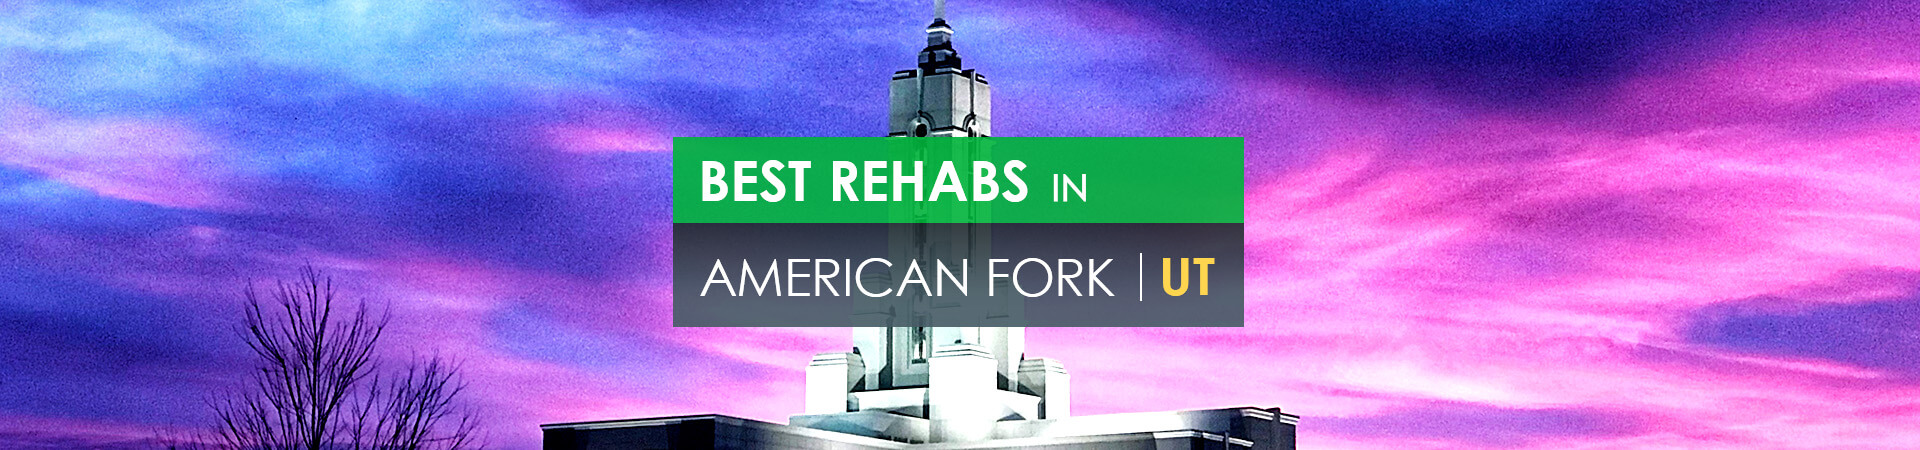 Best rehabs in American Fork, UT